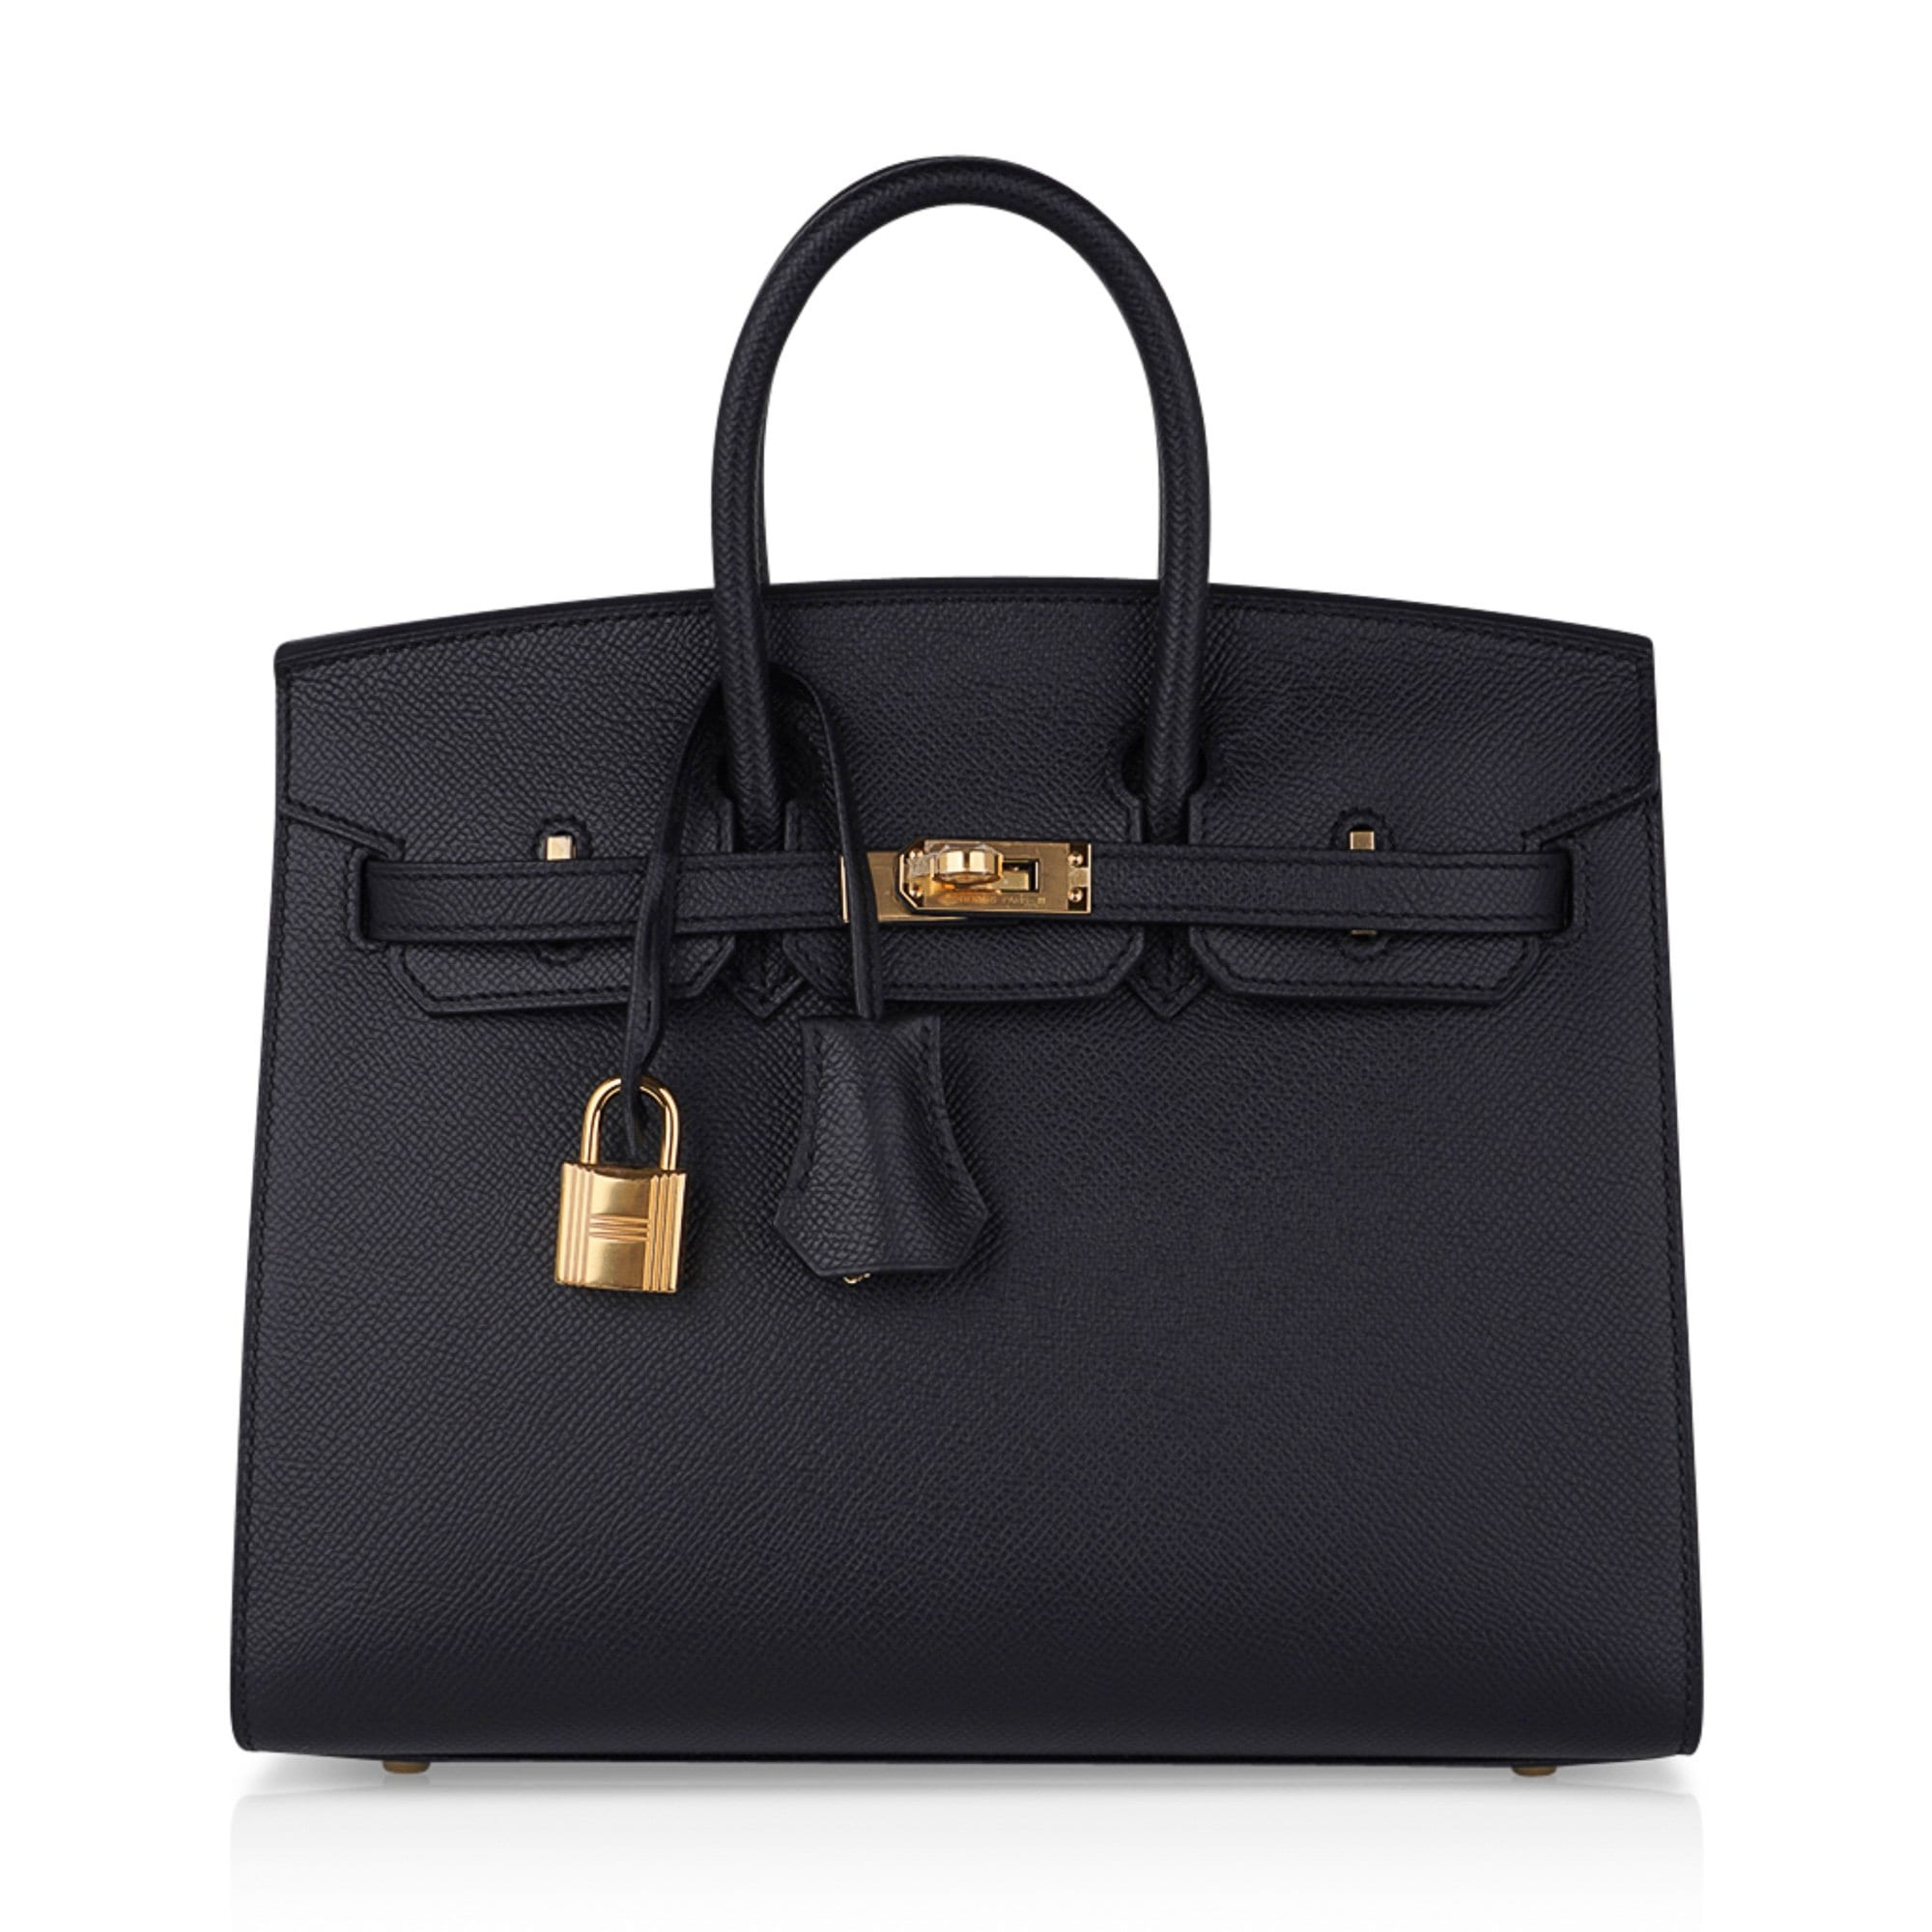 Hermes Personal Birkin Sellier bag 25 Craie/ Black Epsom leather